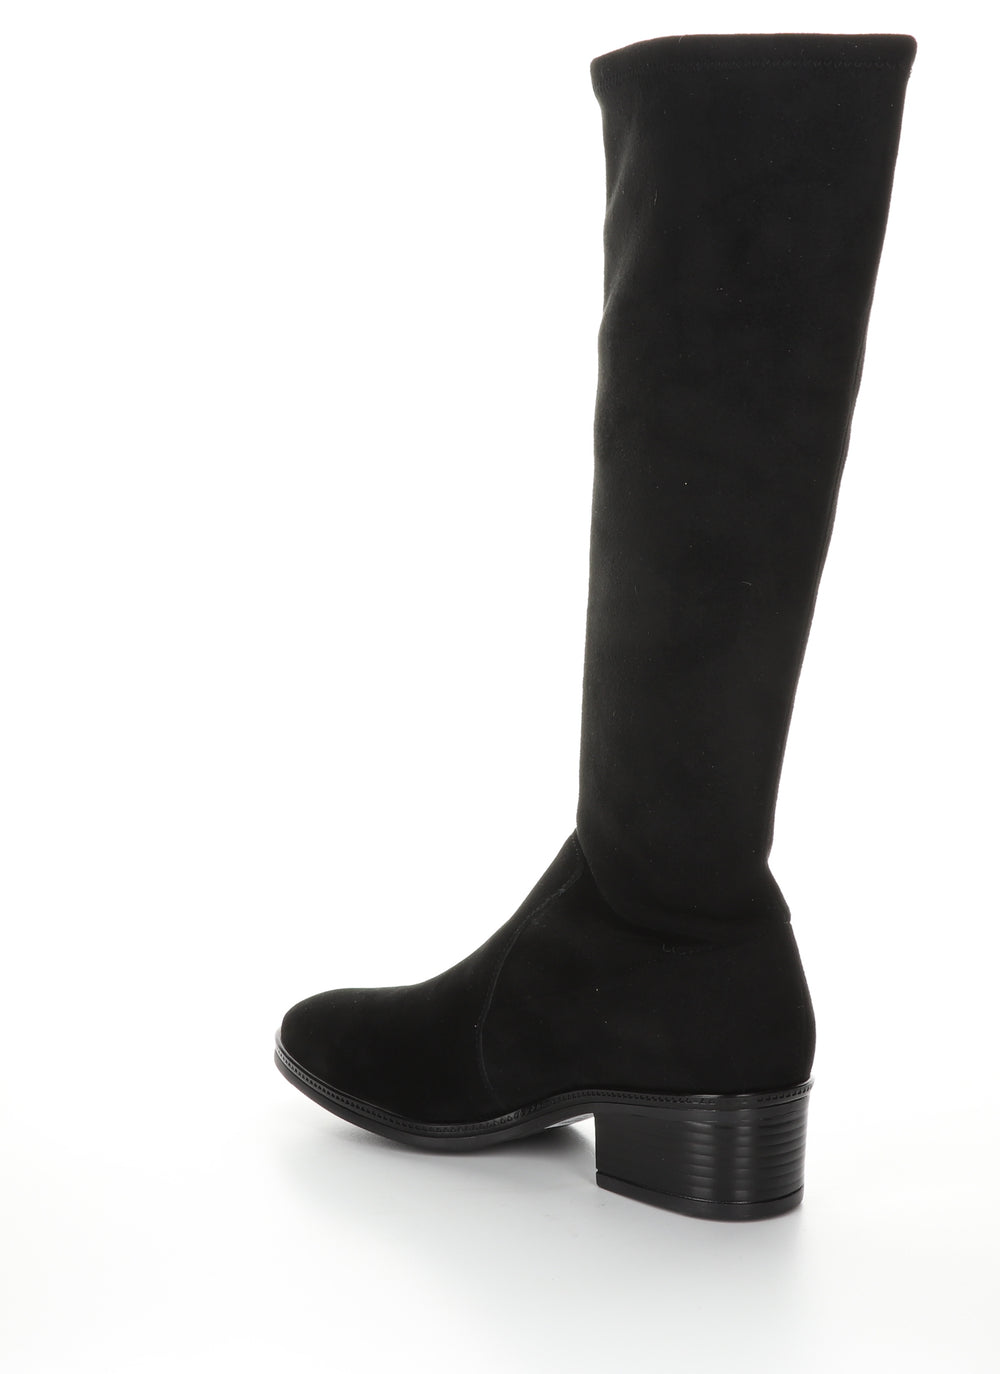 JAVA Black/Black Round Toe Boots